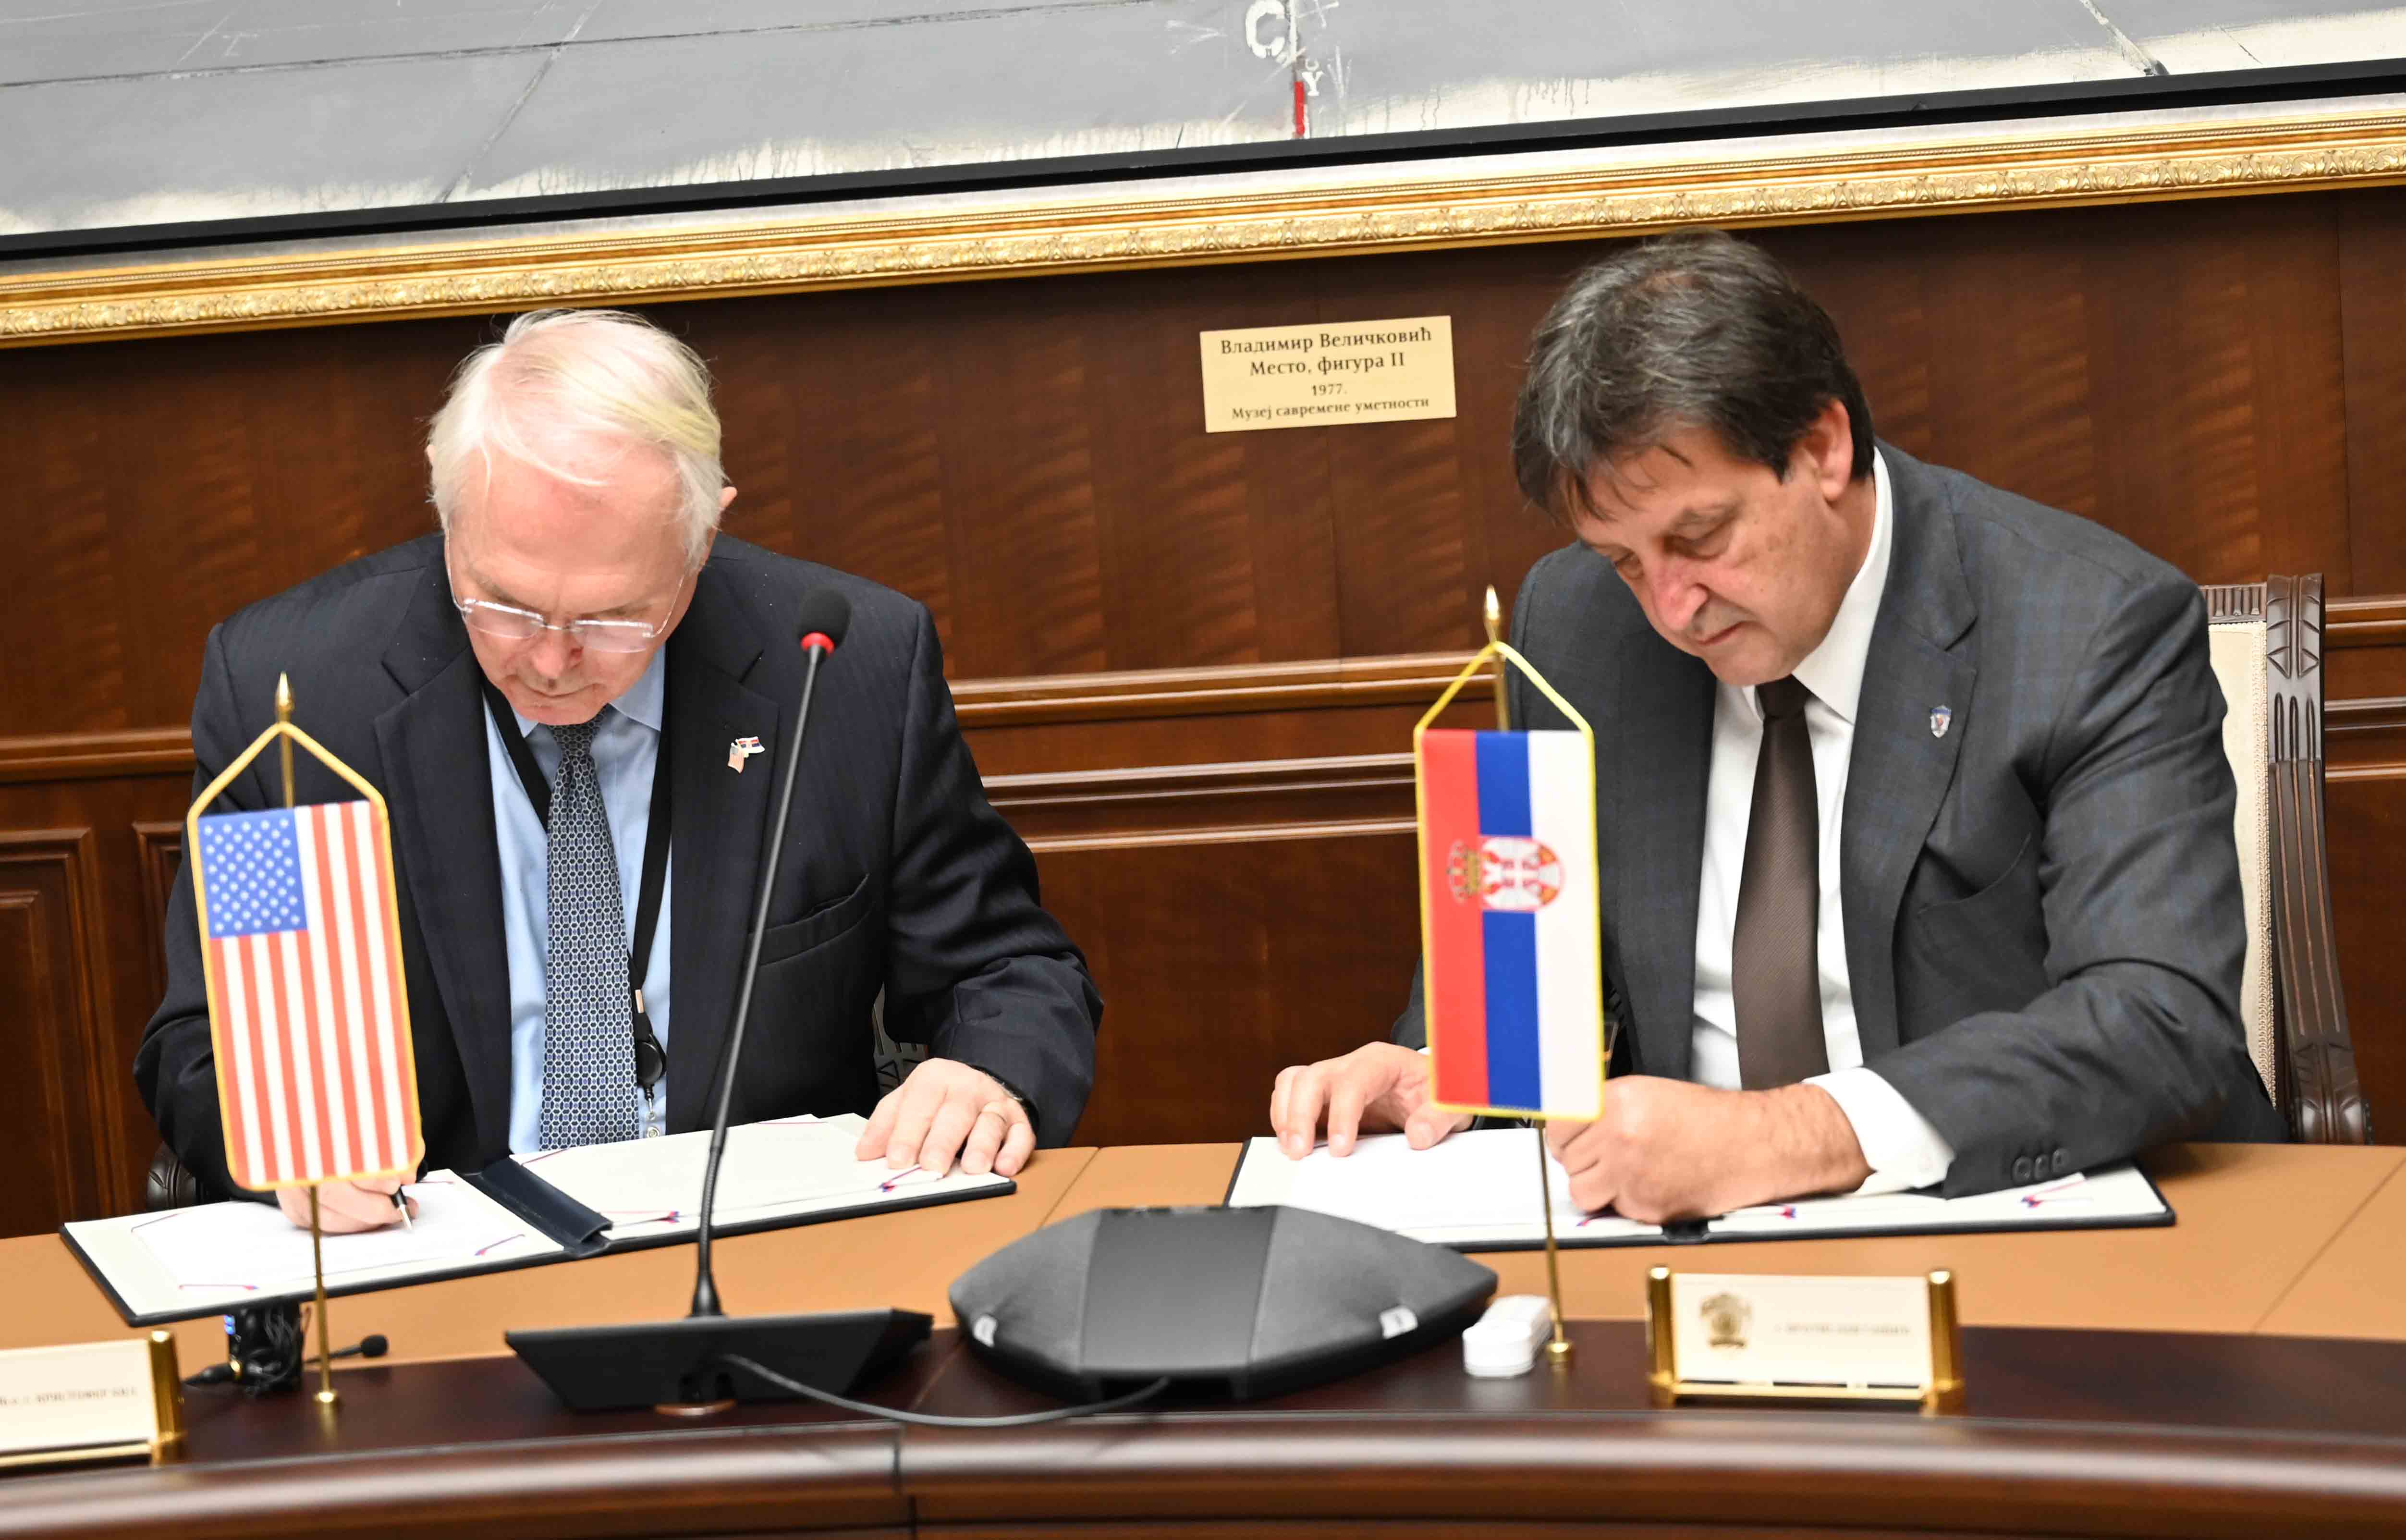 Потписан Уговор о донацији за опремање Наставног центра „Митрово поље“ на Гочу